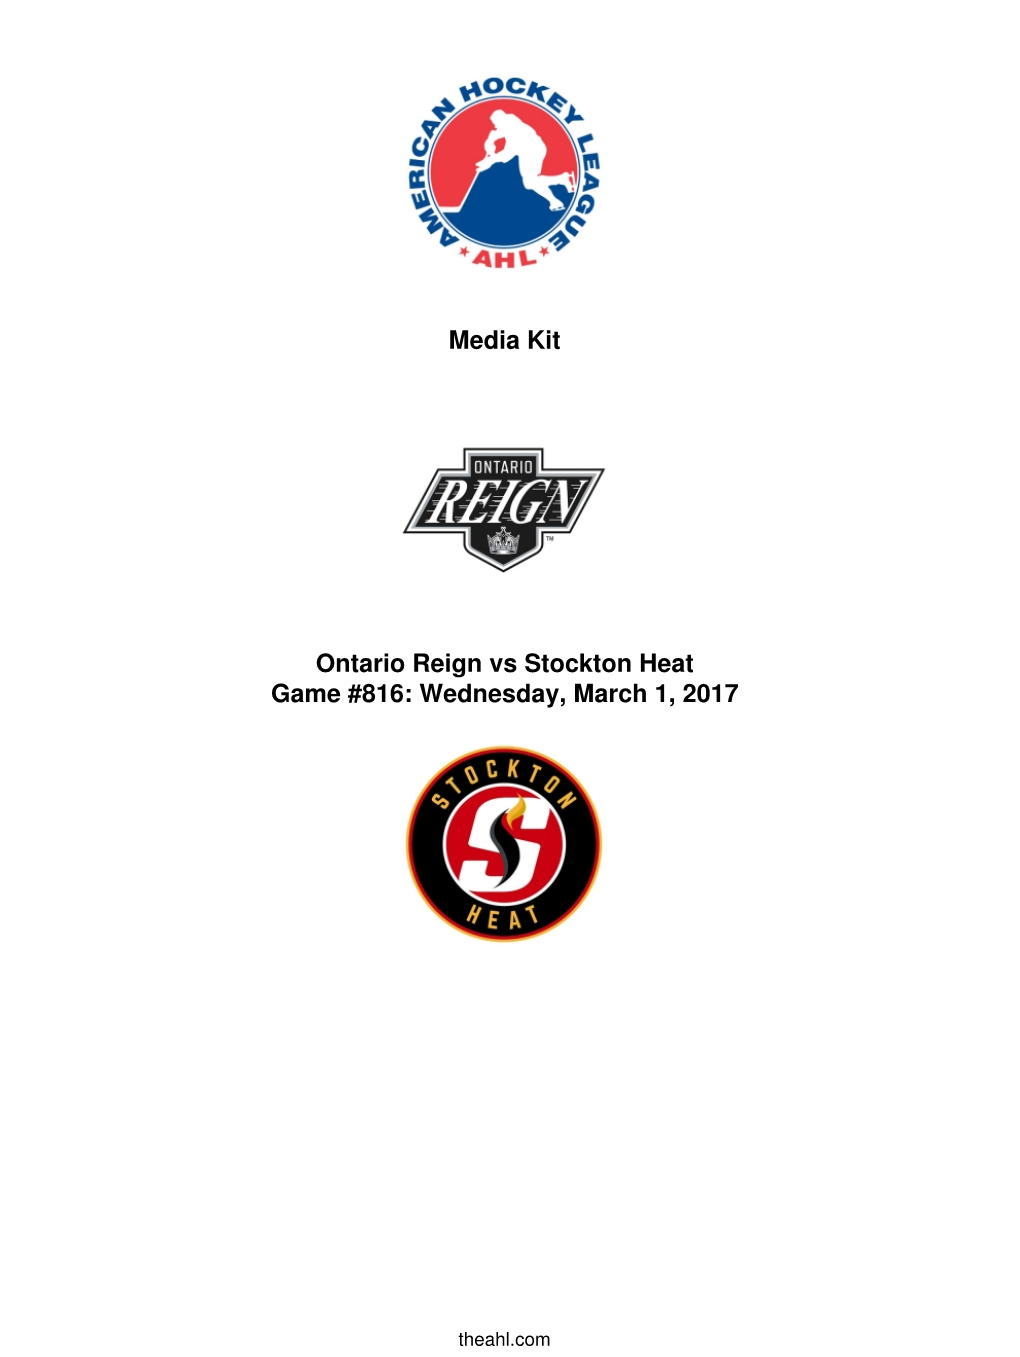 Media Kit Ontario Reign Vs Stockton Heat Game #816: Wednesday